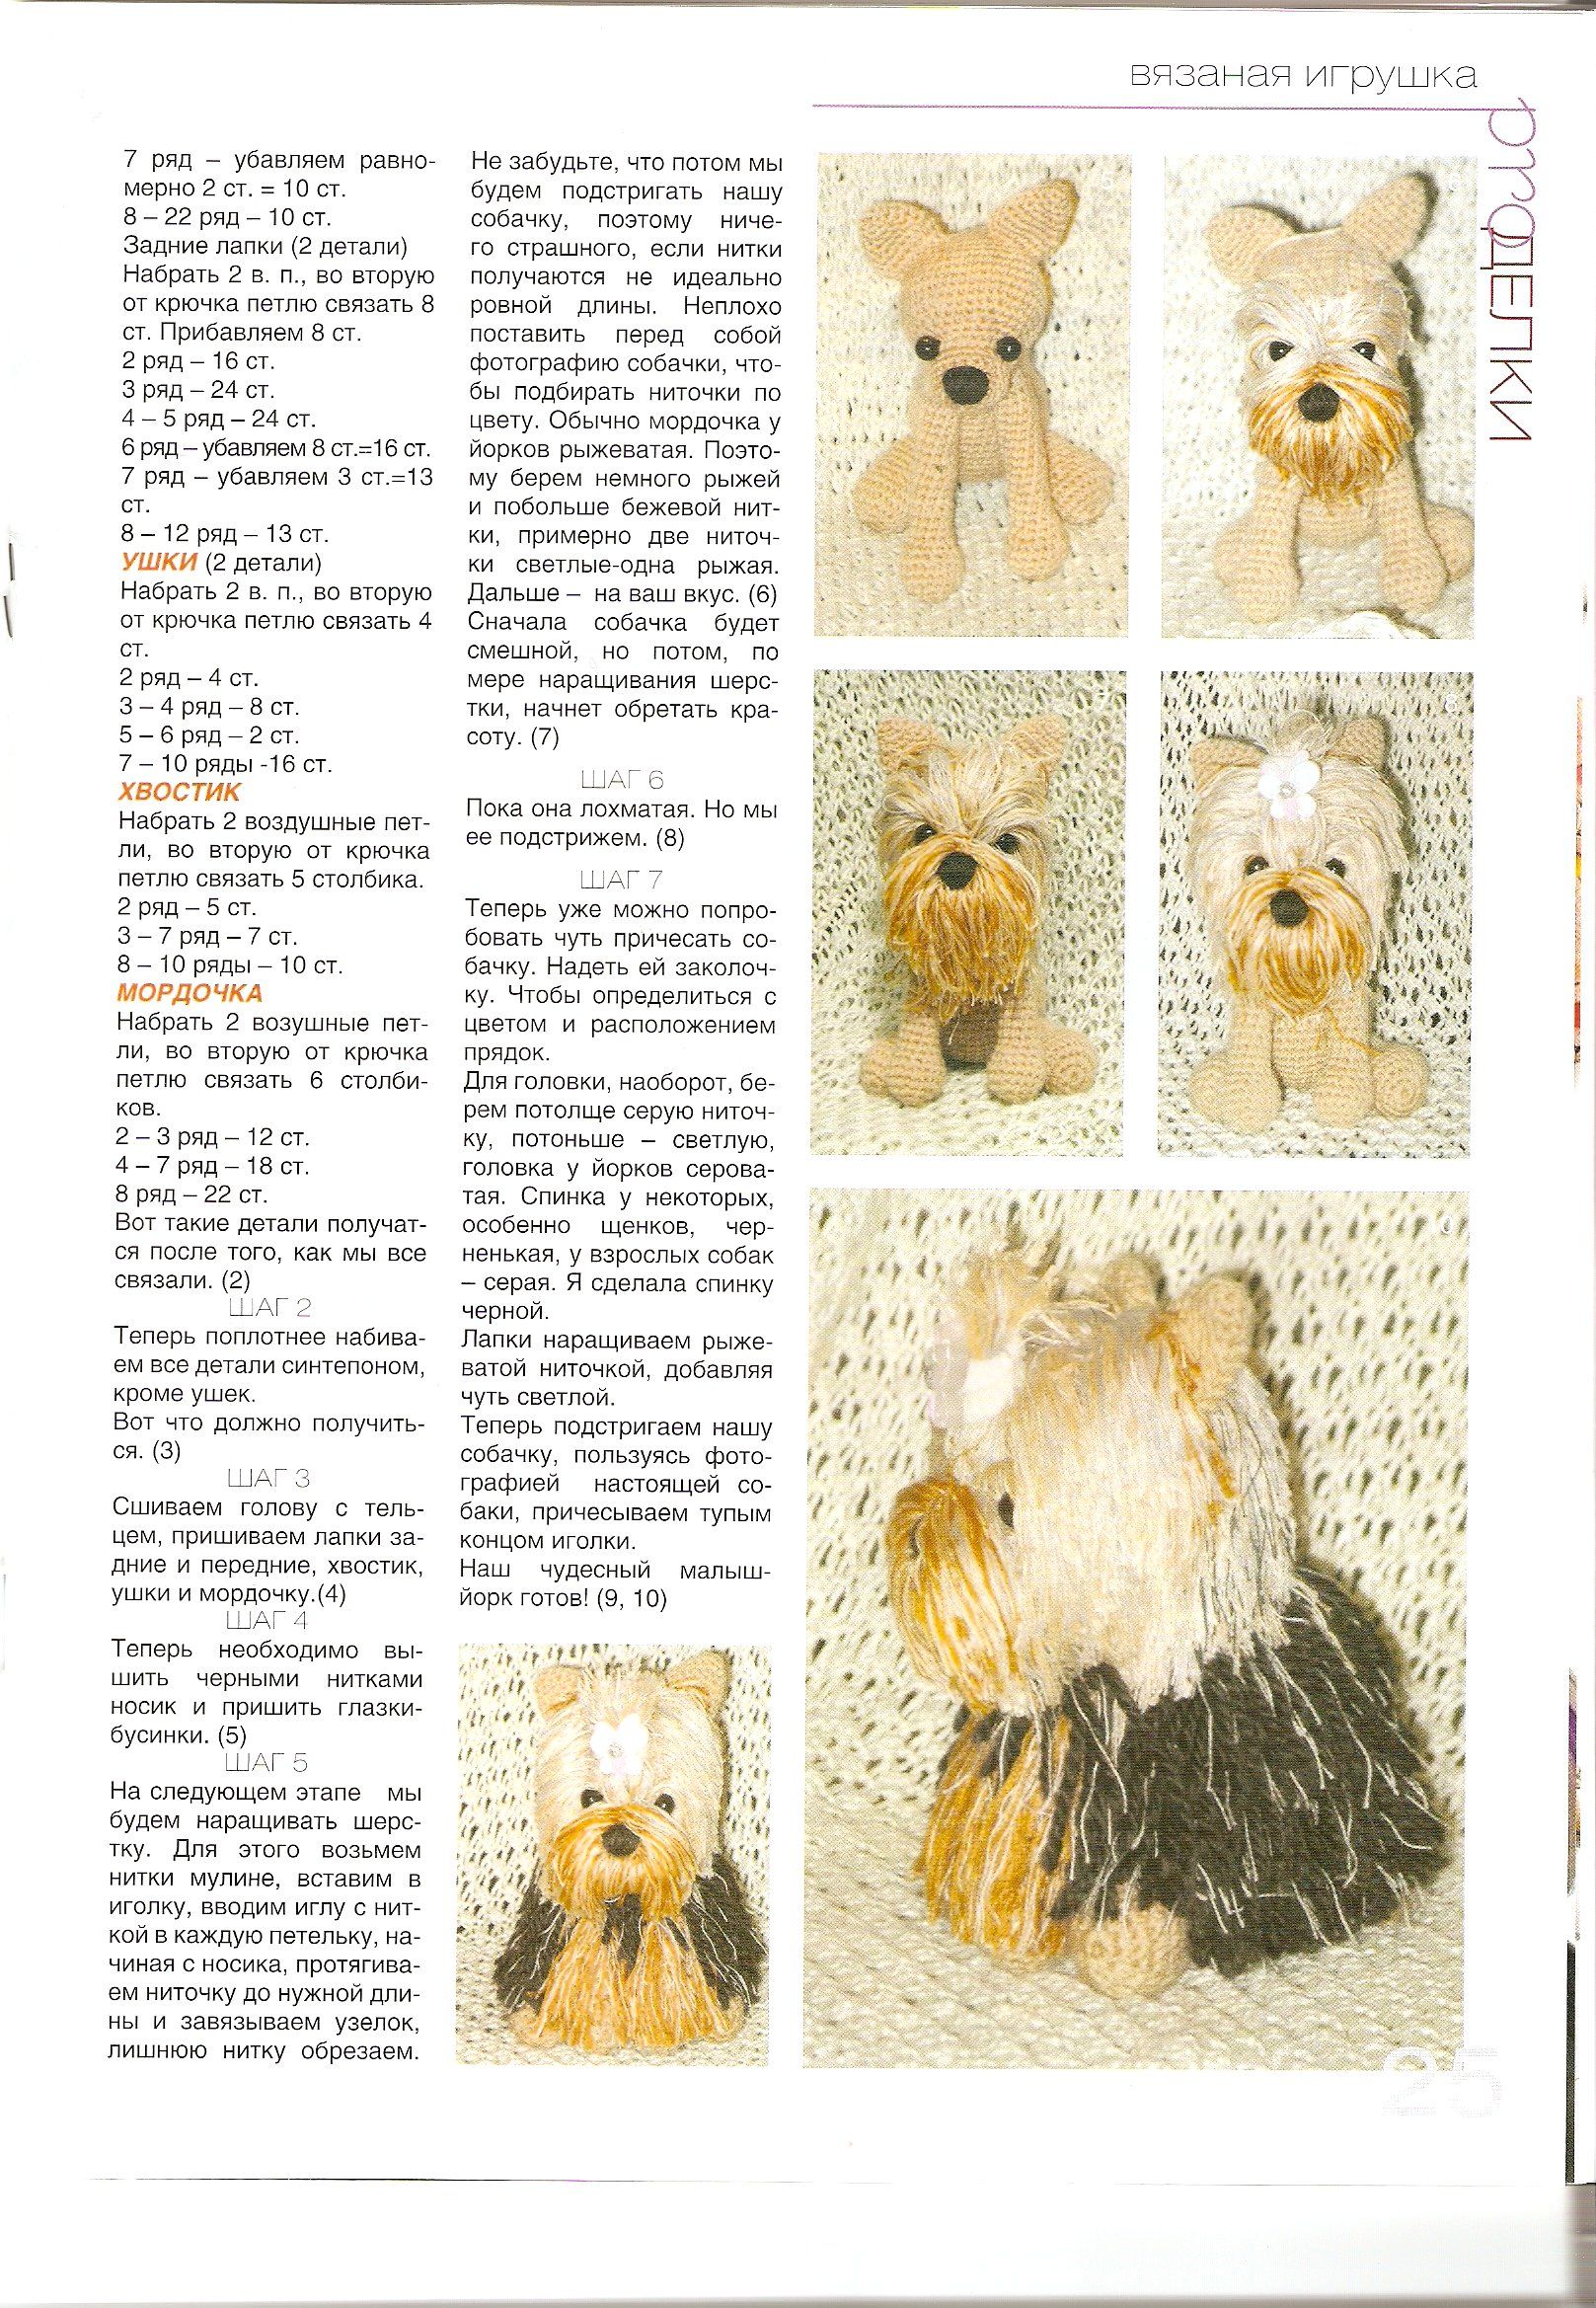 Собака крючком: схема и описание, пошаговый мастер-класс по вязанию йорка с фото и видео